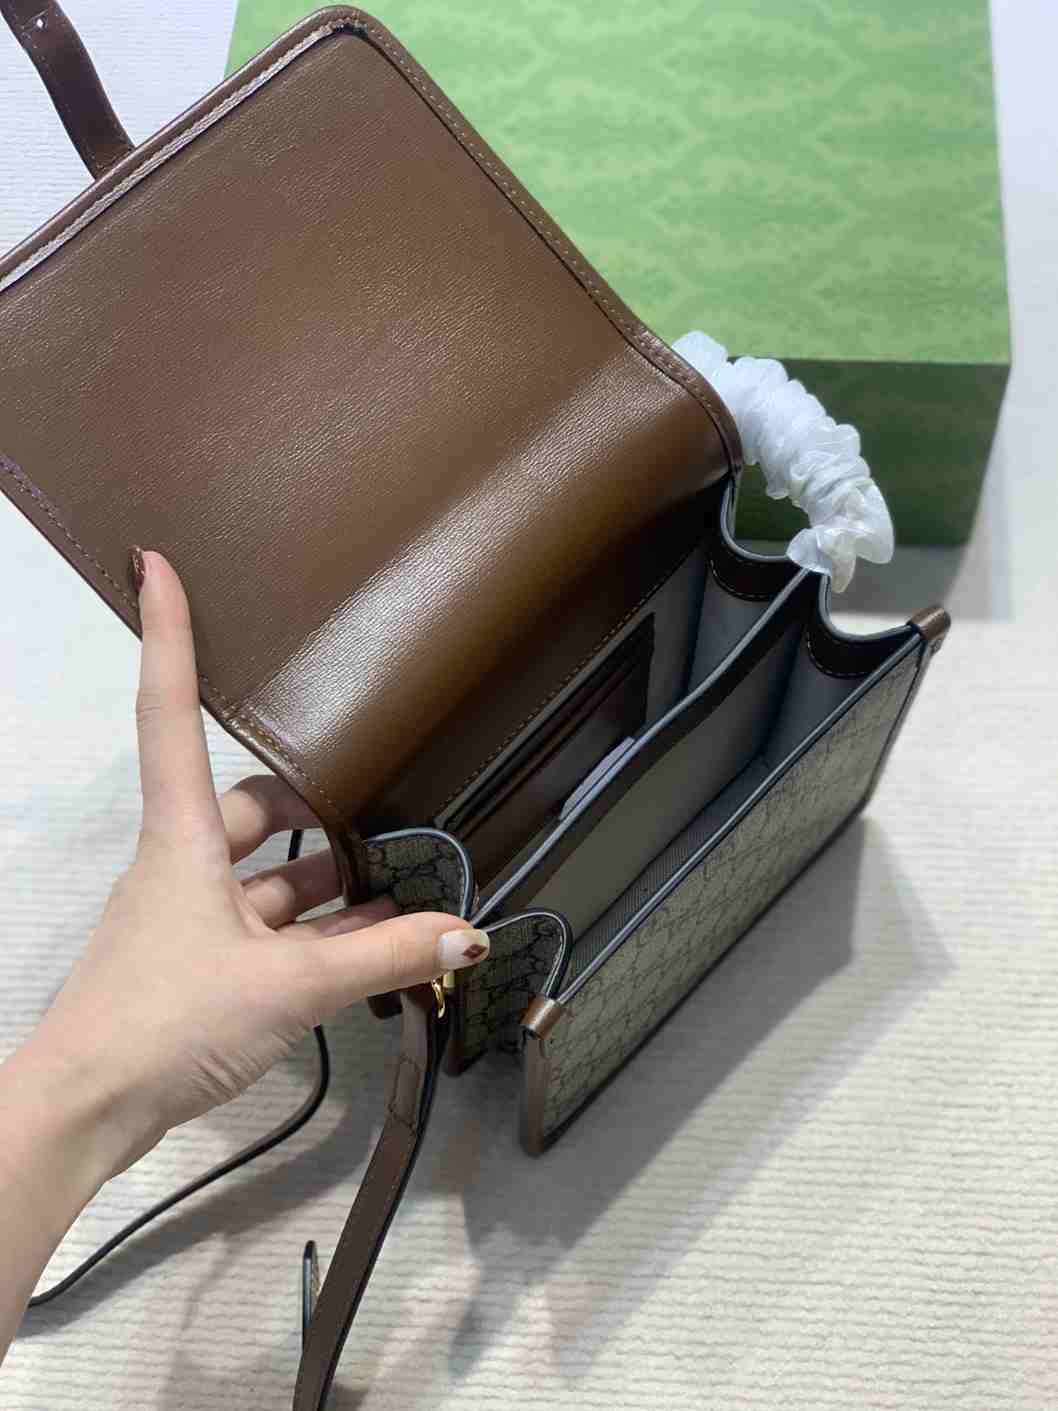 Gucci Mini shoulder Bag with Interlocking G replica